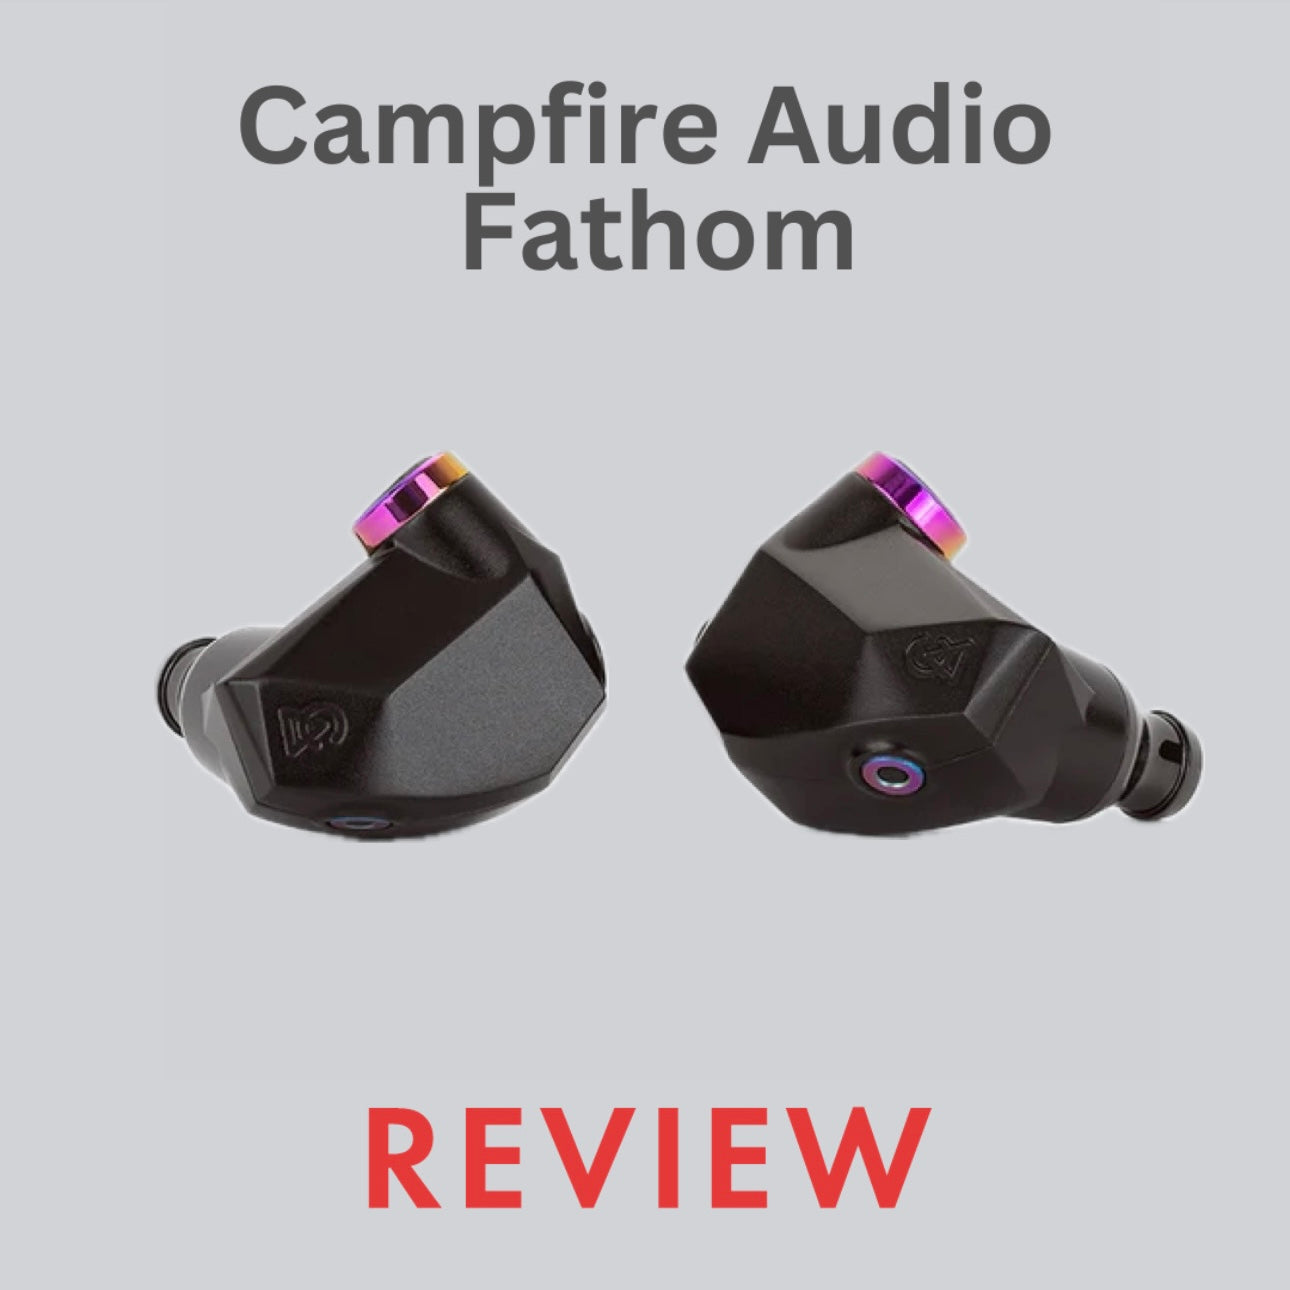 Campfire Audio Fathom Review